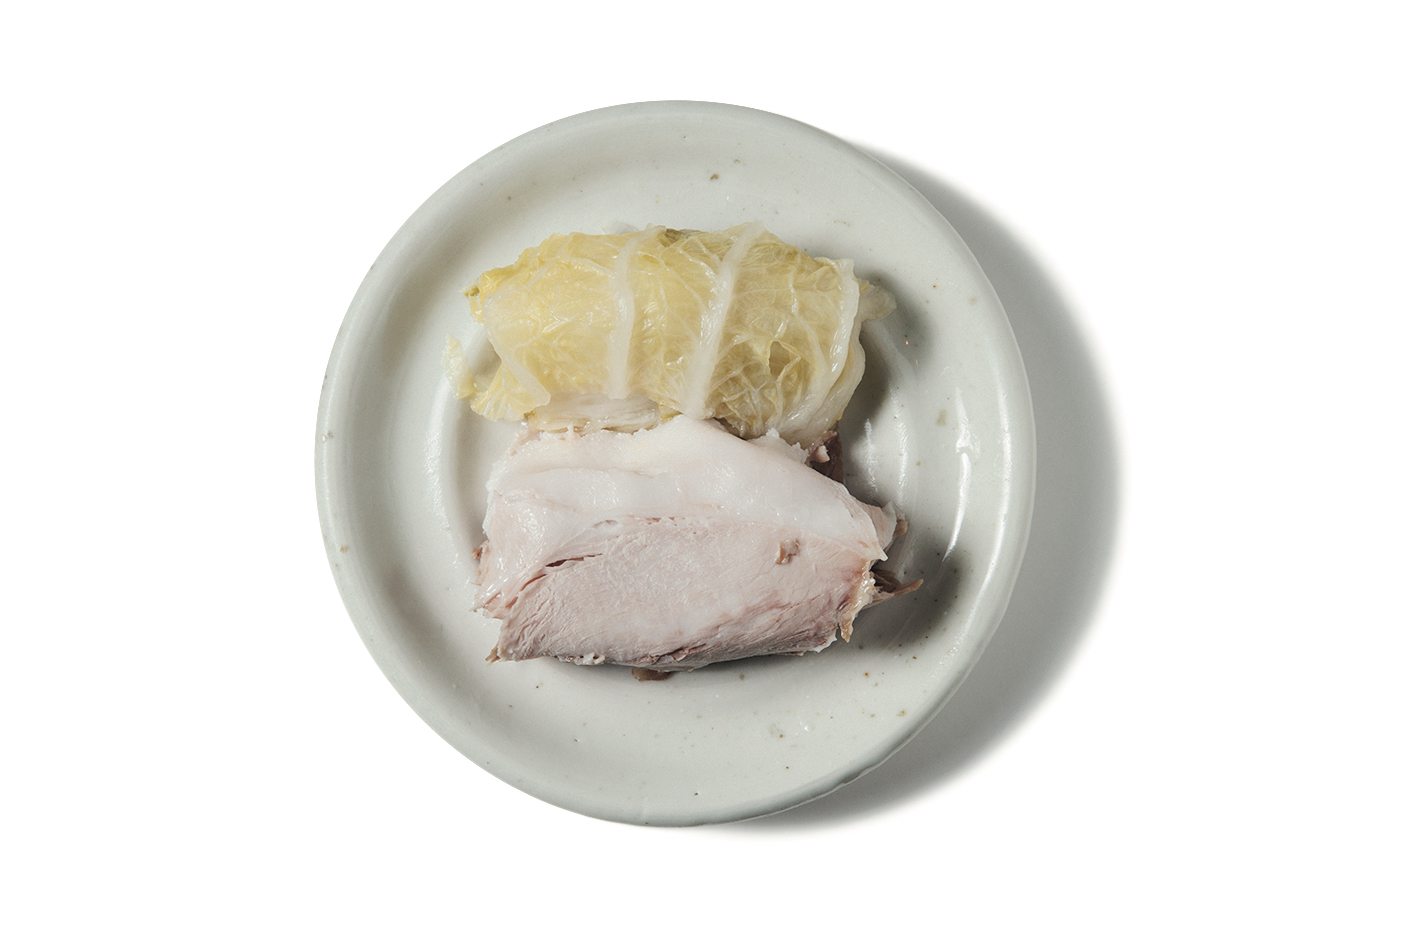 蒸し豚と塩漬け白菜600円。蒸した豚の薄切り肉を塩漬けした白菜で巻いた、韓国の家庭料理。白菜に1枚ずつ豚肉をのせ、ニンニク入りの醤油をつけていただくスタイル。韓国人が懐かしむ昔ながらの味。